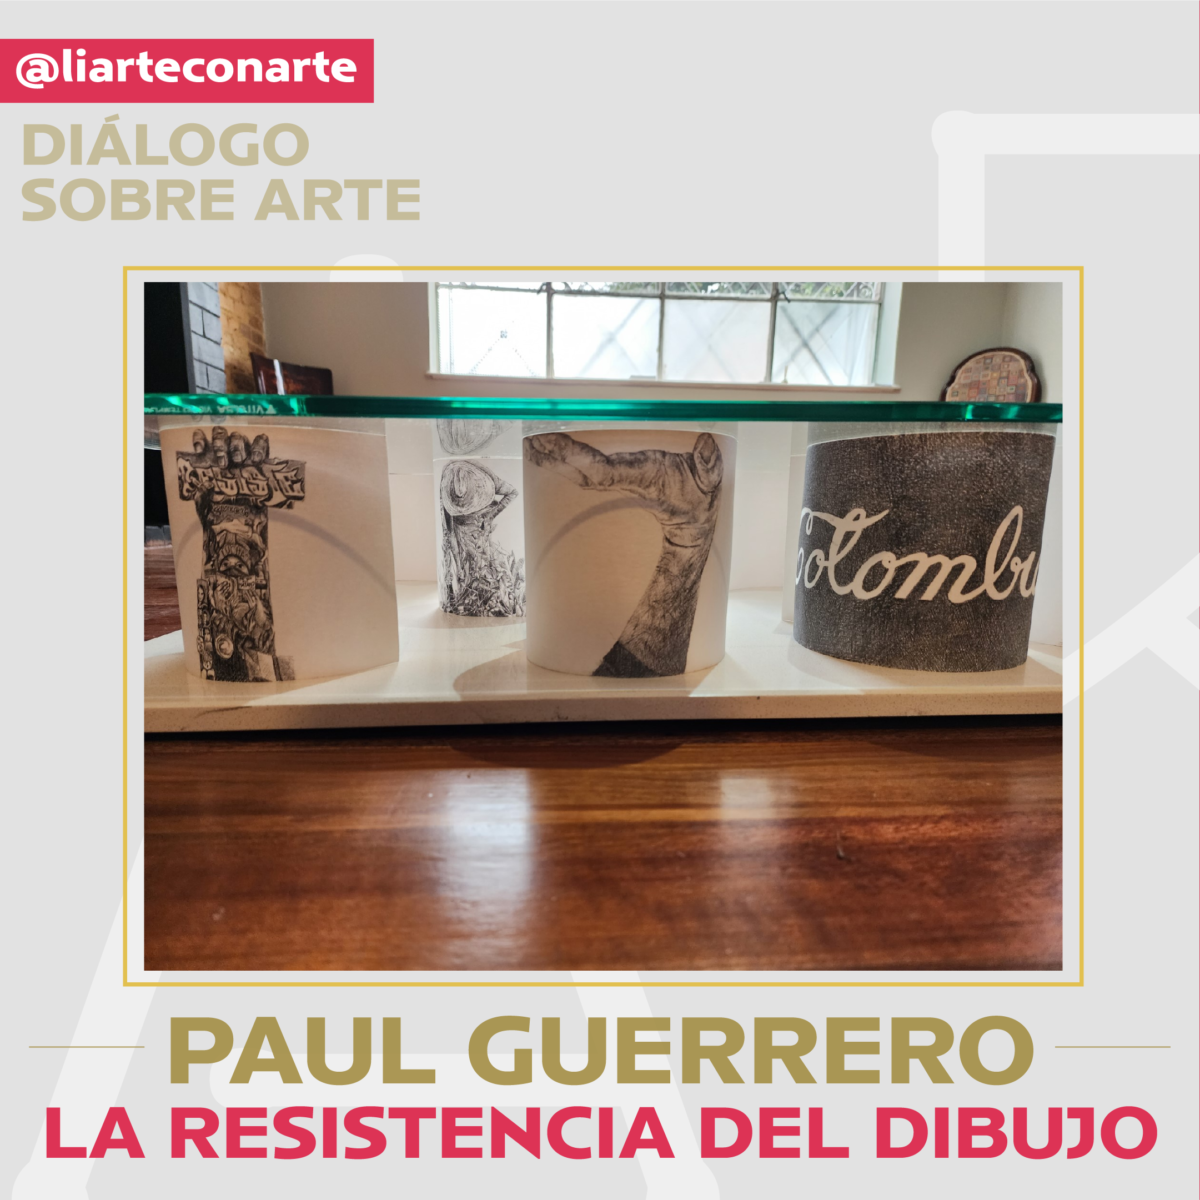 Paul Guerrero: entre el peso de la imagen y la resistencia del dibujo